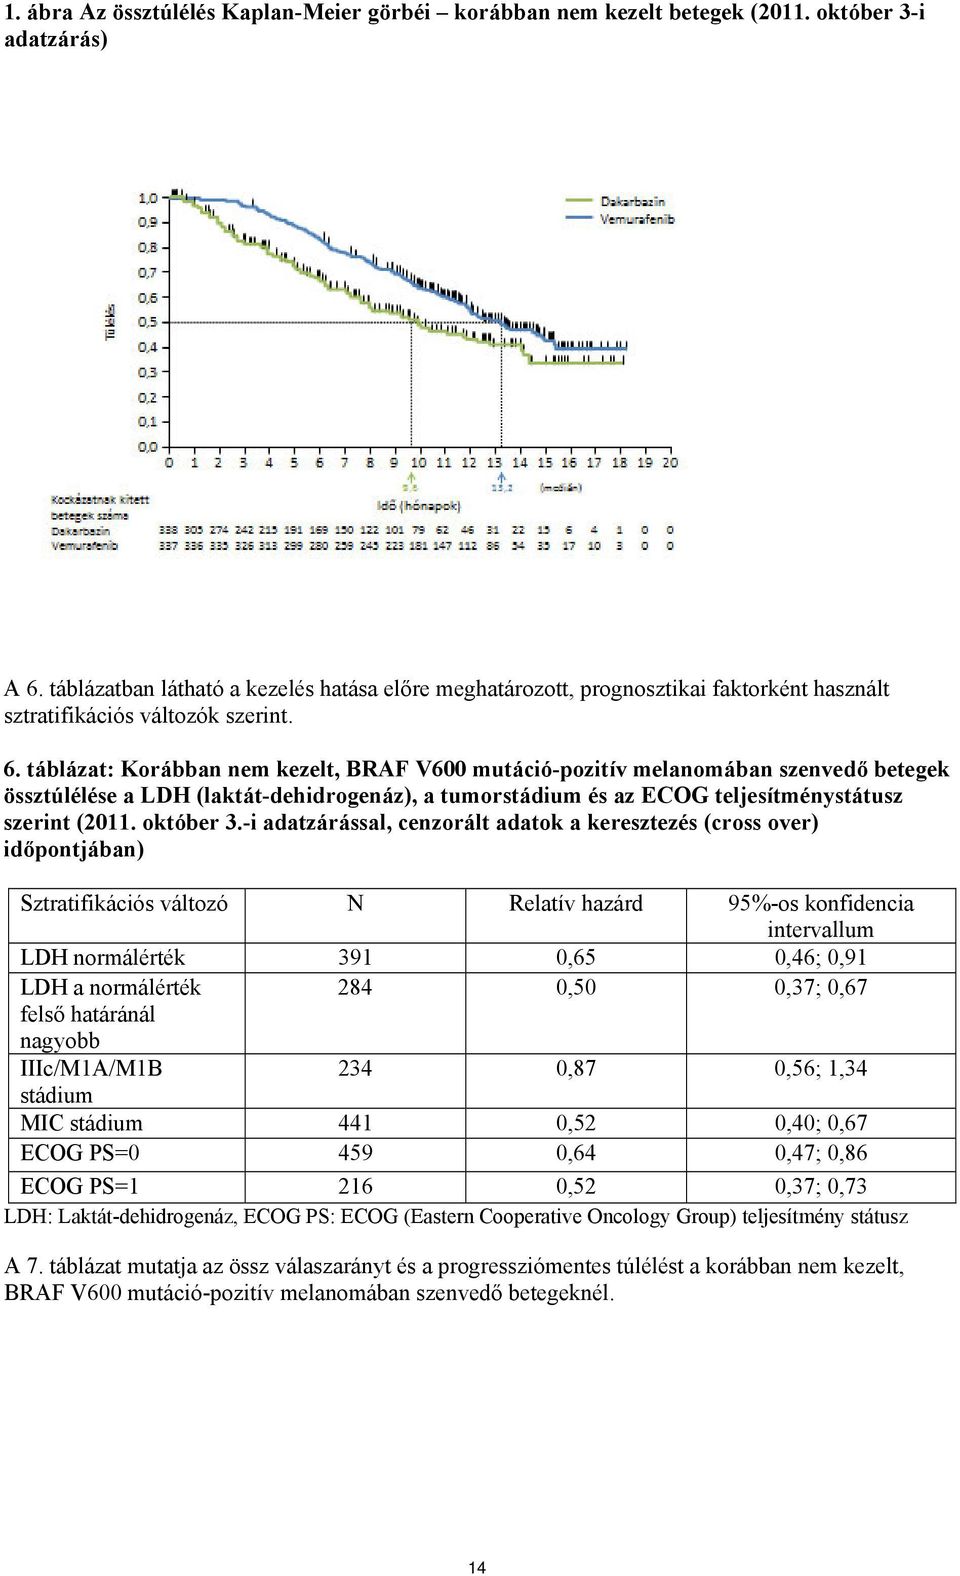 táblázat: Korábban nem kezelt, BRAF V600 mutáció-pozitív melanomában szenvedő betegek össztúlélése a LDH (laktát-dehidrogenáz), a tumorstádium és az ECOG teljesítménystátusz szerint (2011. október 3.